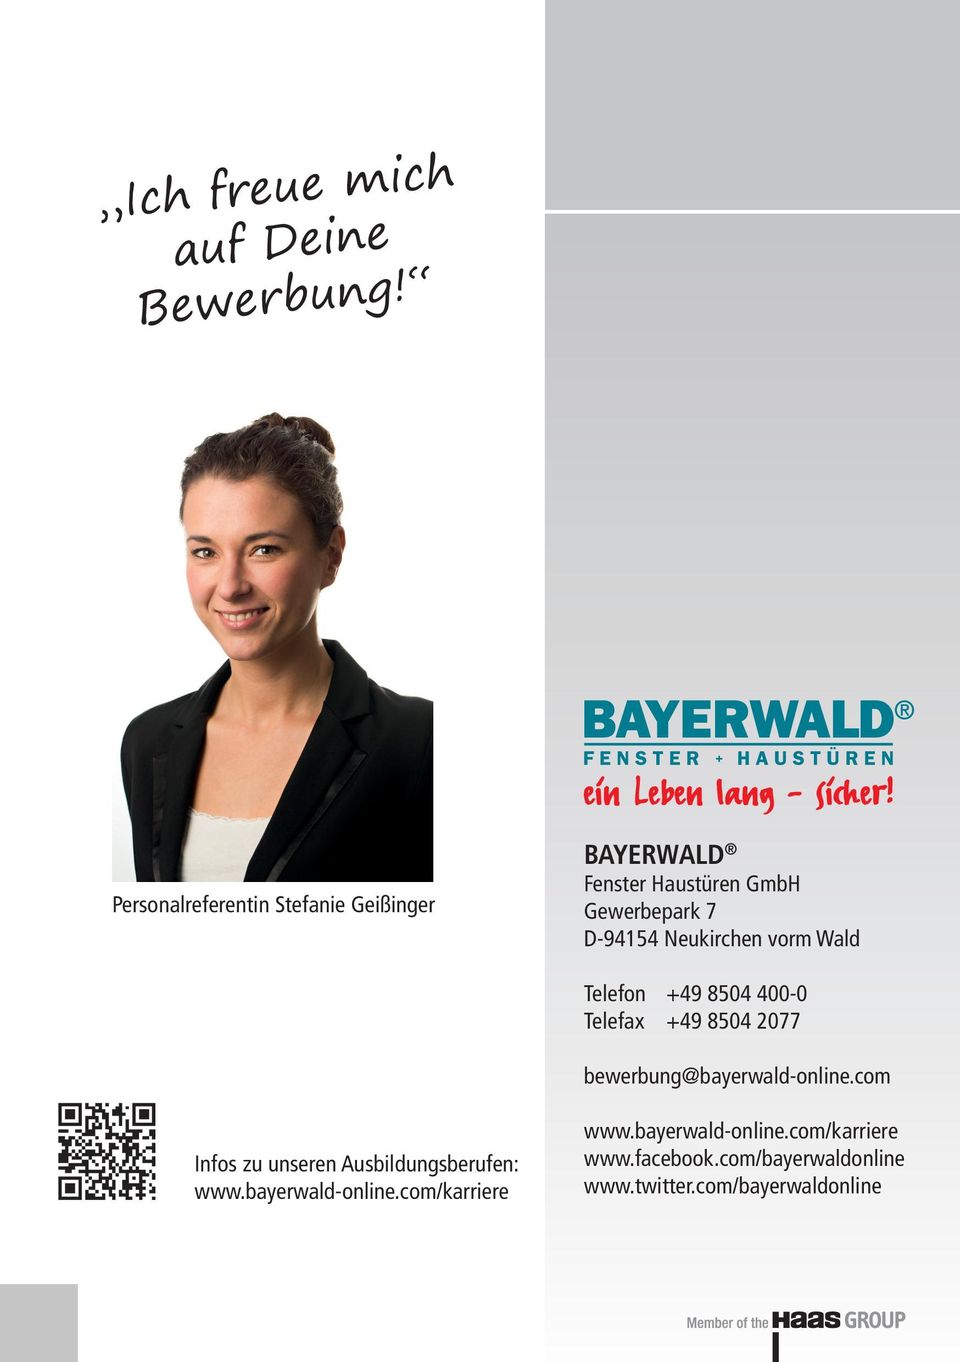 Neukirchen vorm Wald Telefon +49 8504 400-0 Telefax +49 8504 2077 bewerbung@bayerwald-online.